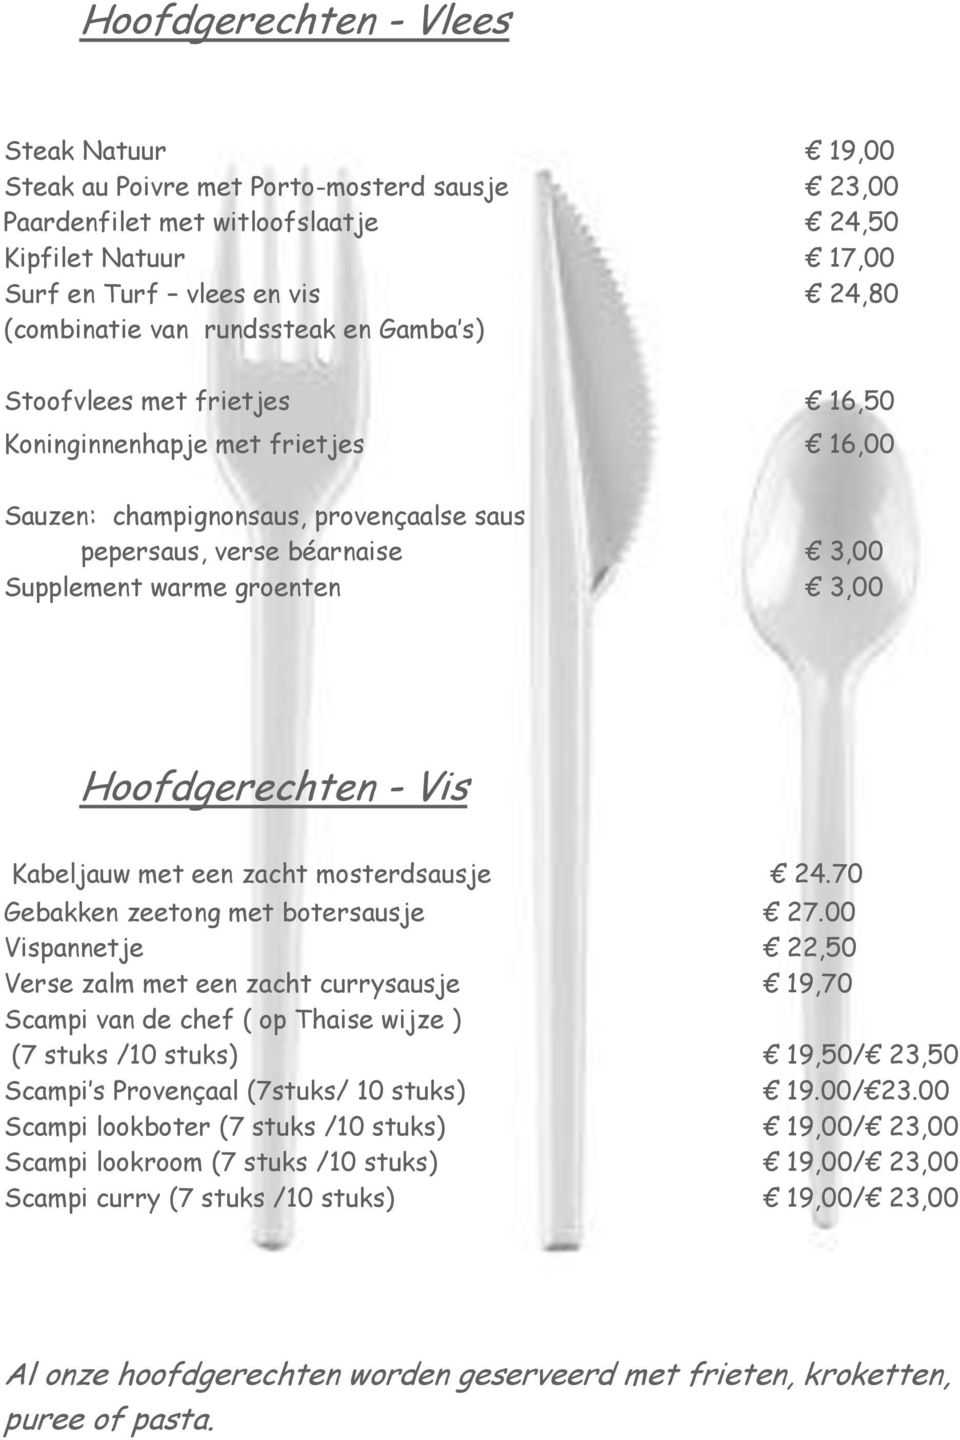 Hoofdgerechten - Vis Kabeljauw met een zacht mosterdsausje 24.70 Gebakken zeetong met botersausje 27.